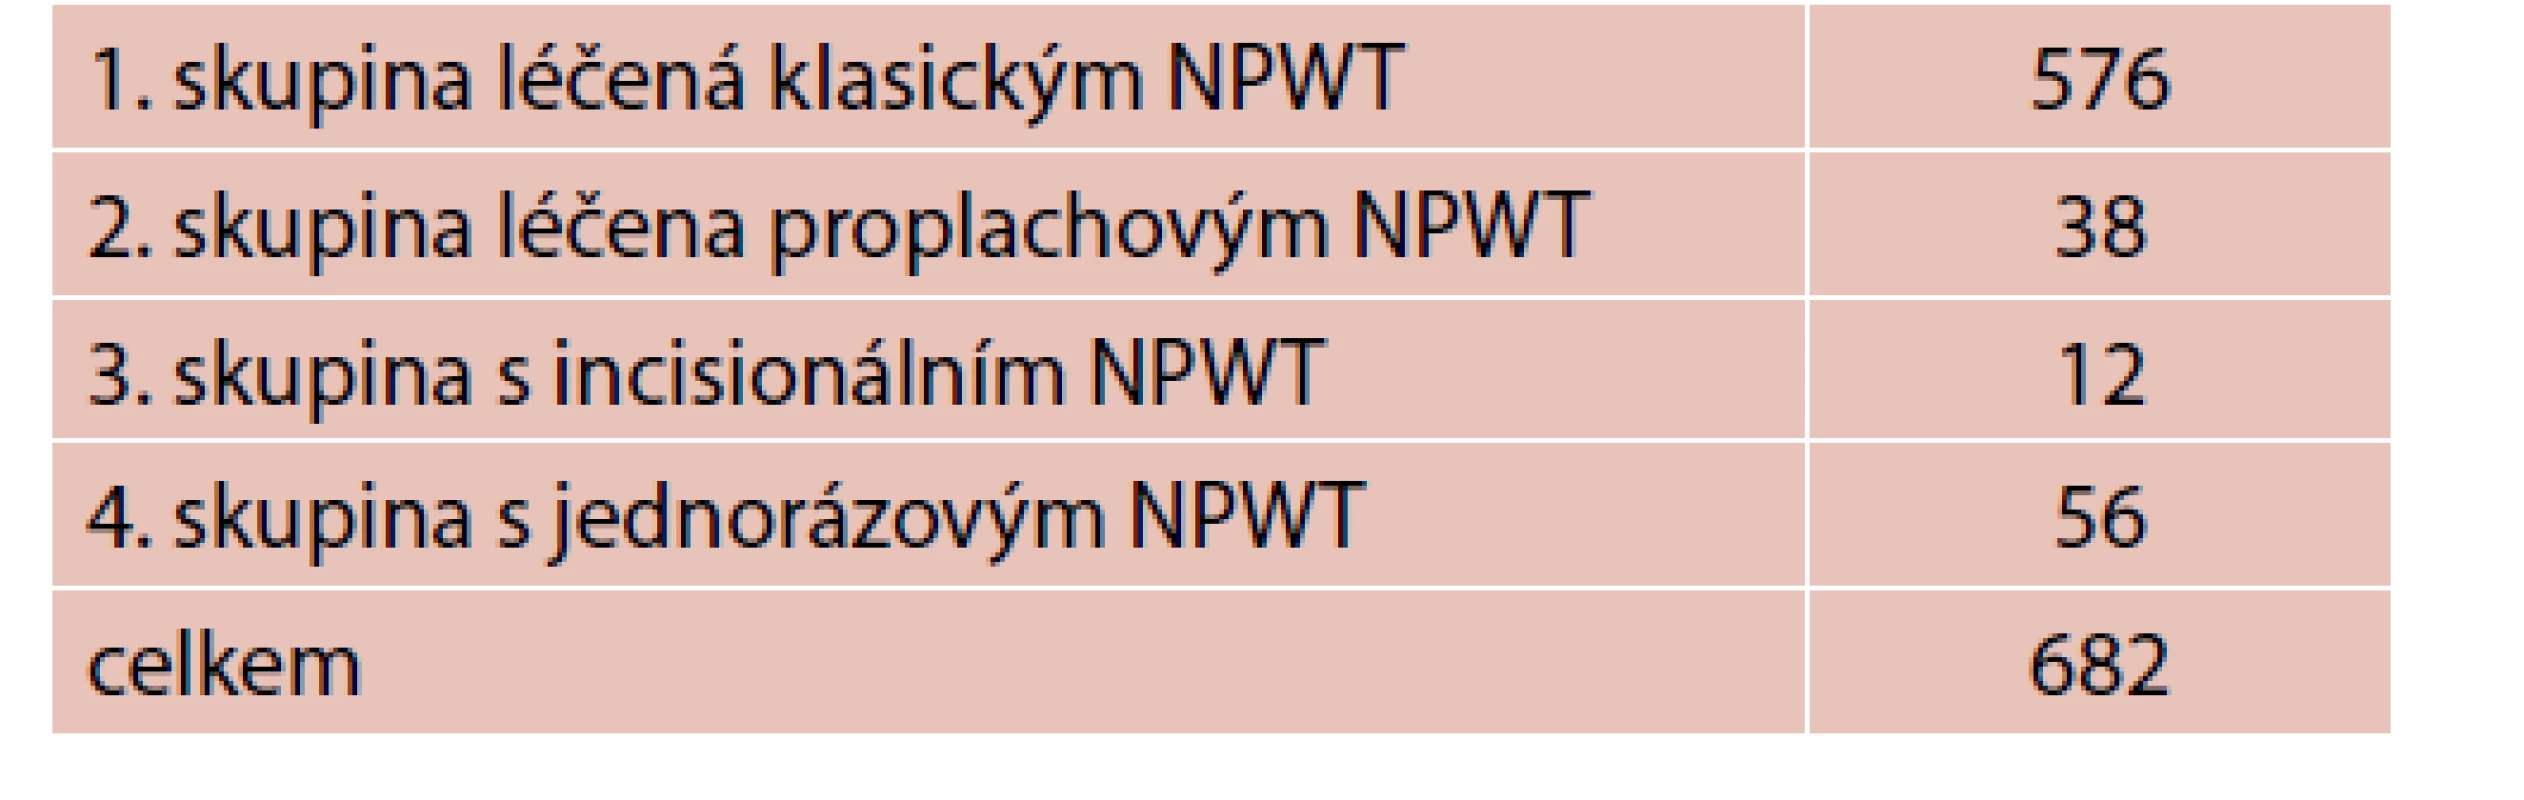 Počty pacientů léčených jednotlivými typy NPWT terapie